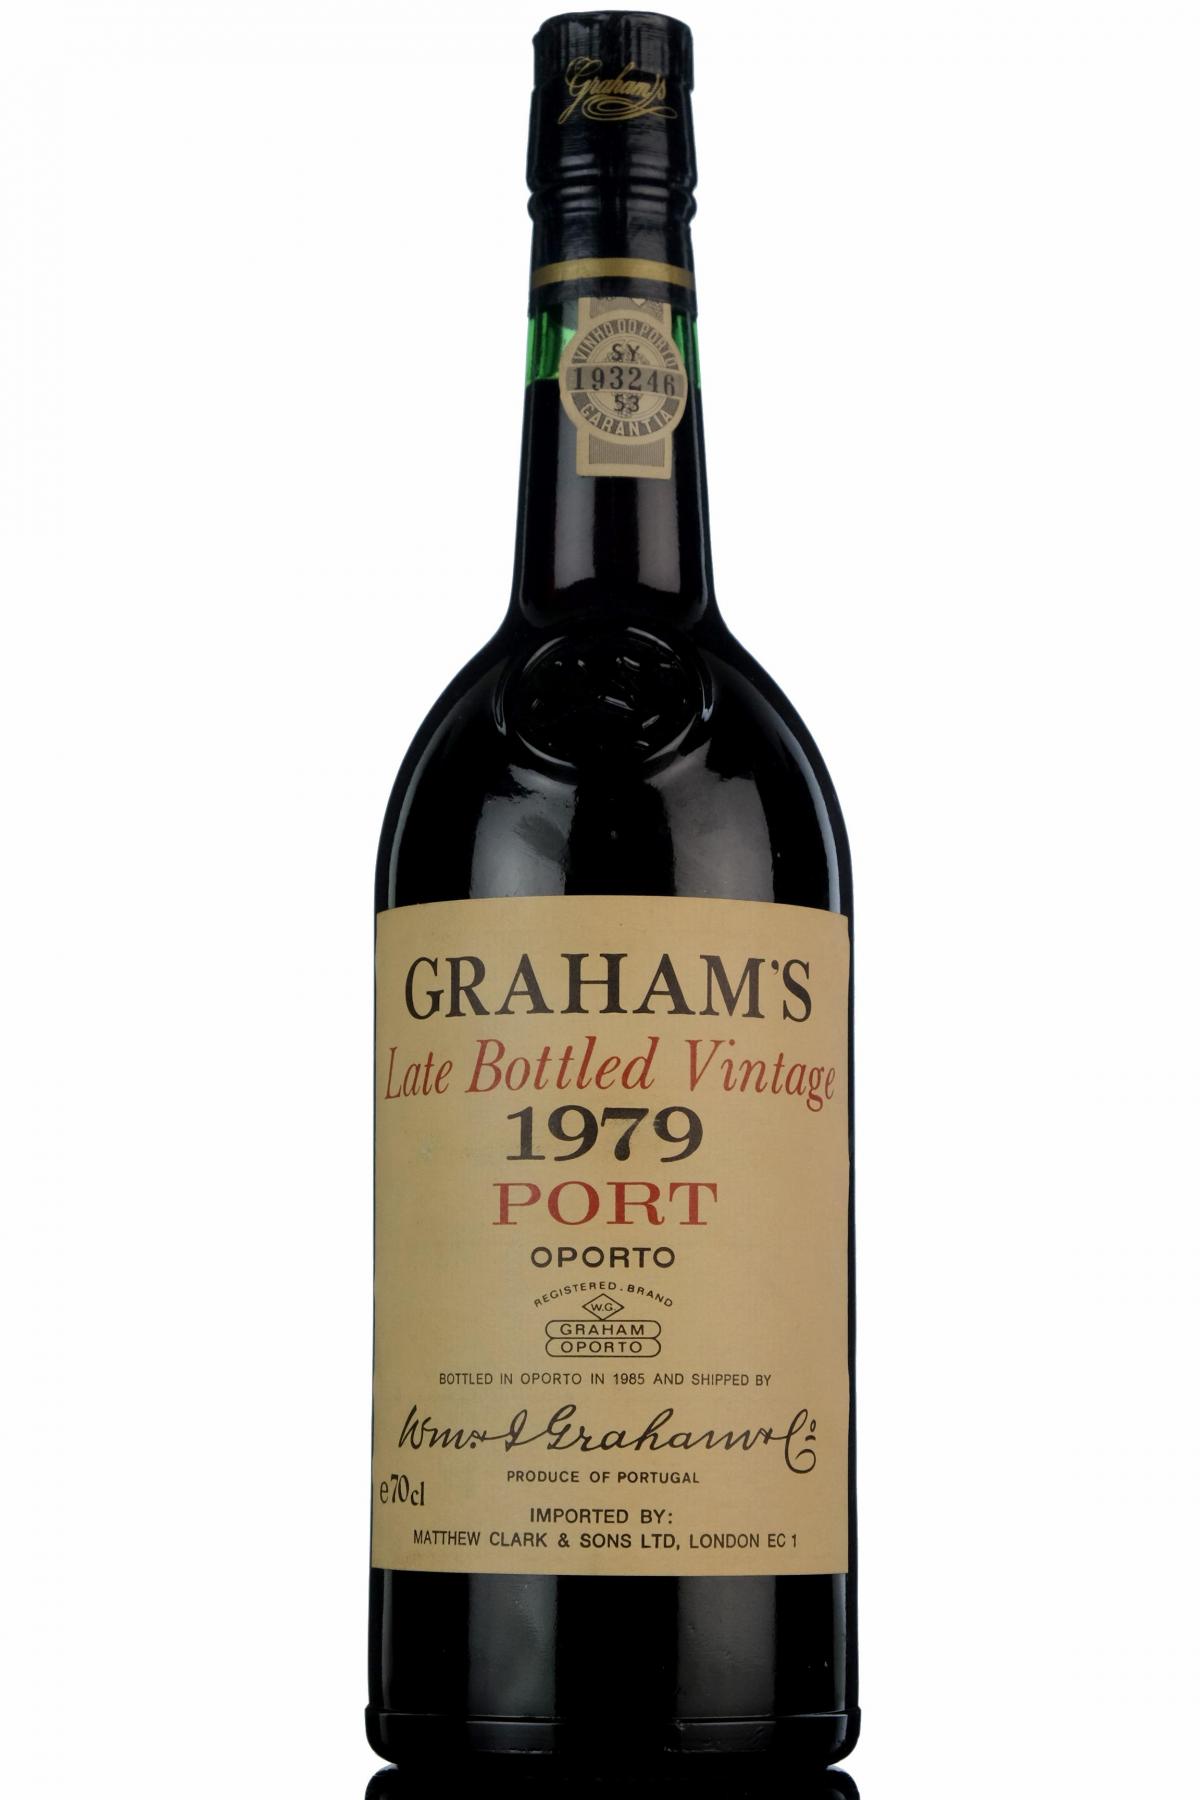 Grahams 1979 Vintage Port